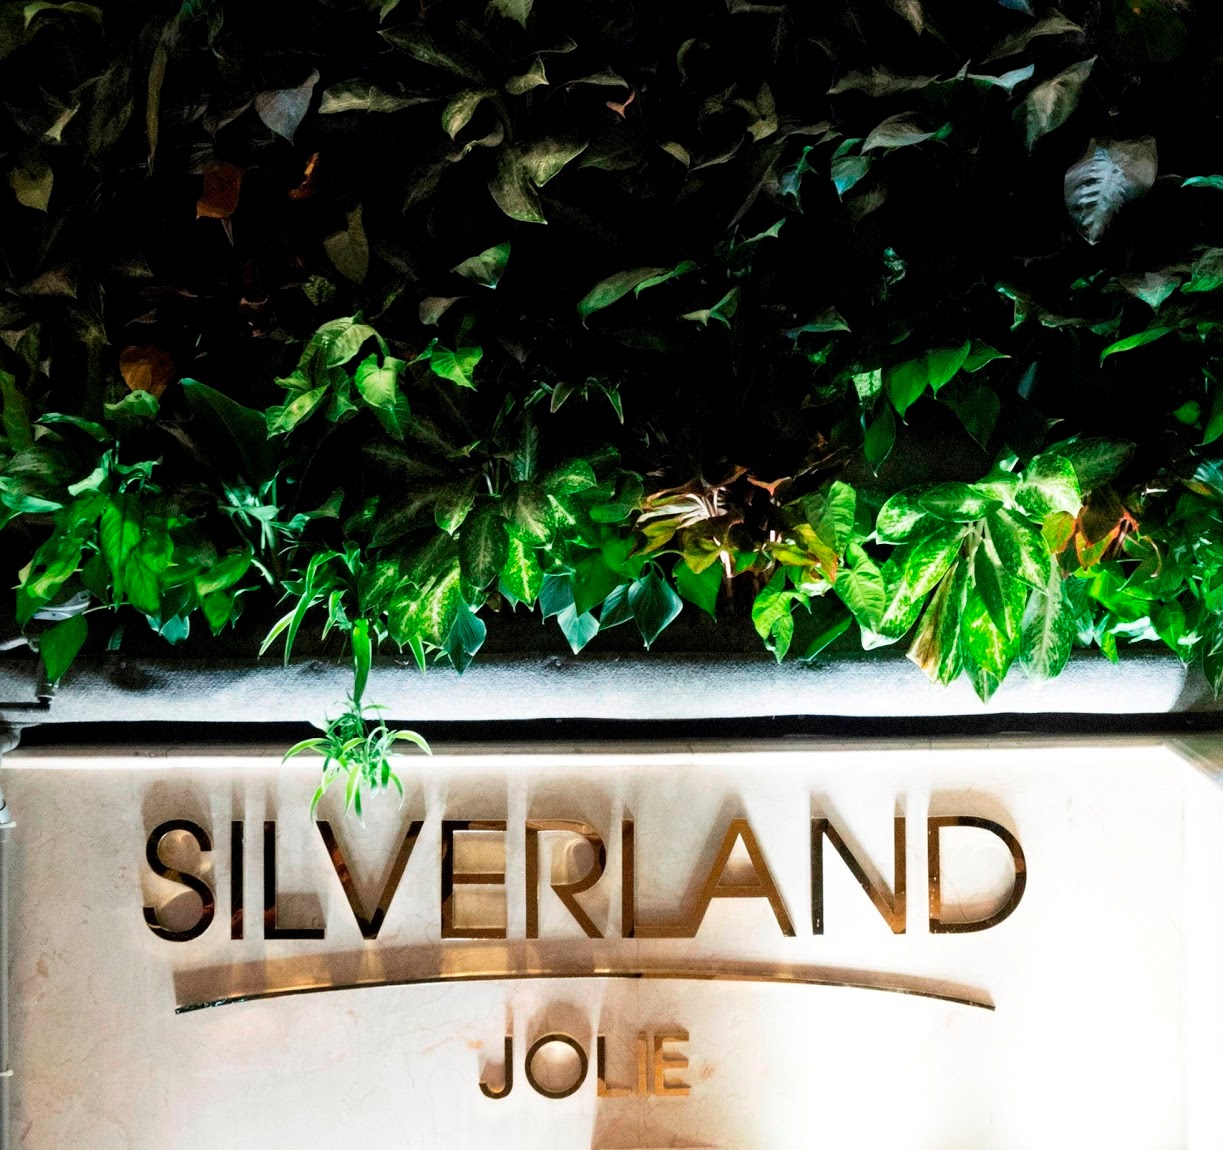 Silverland Jolie Hotel & Spa - Hồ Chí Minh